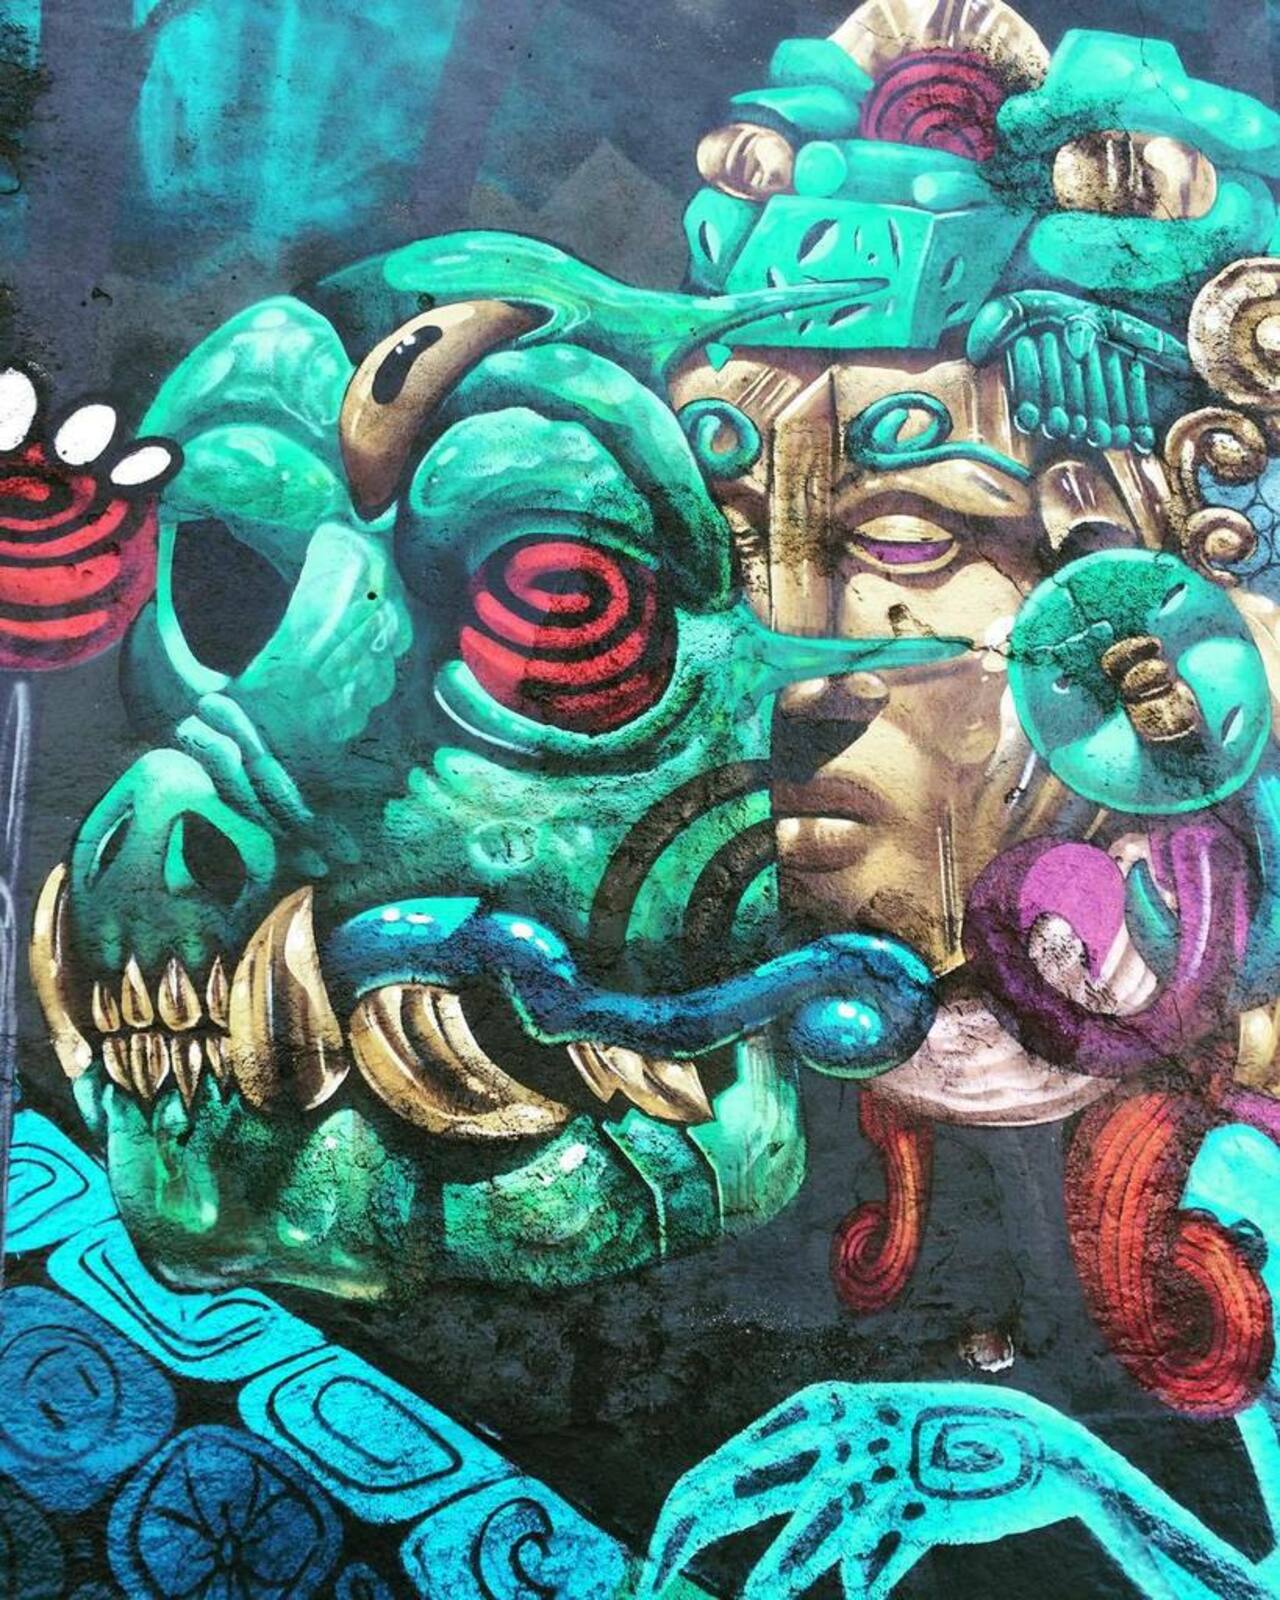 RT @StArtEverywhere: Detaill...... #graffiti #graffitiartist #graffitimexico #graffitiigers #street #streetart #streetstyle #streetartis… https://t.co/CmNLfAsh3r